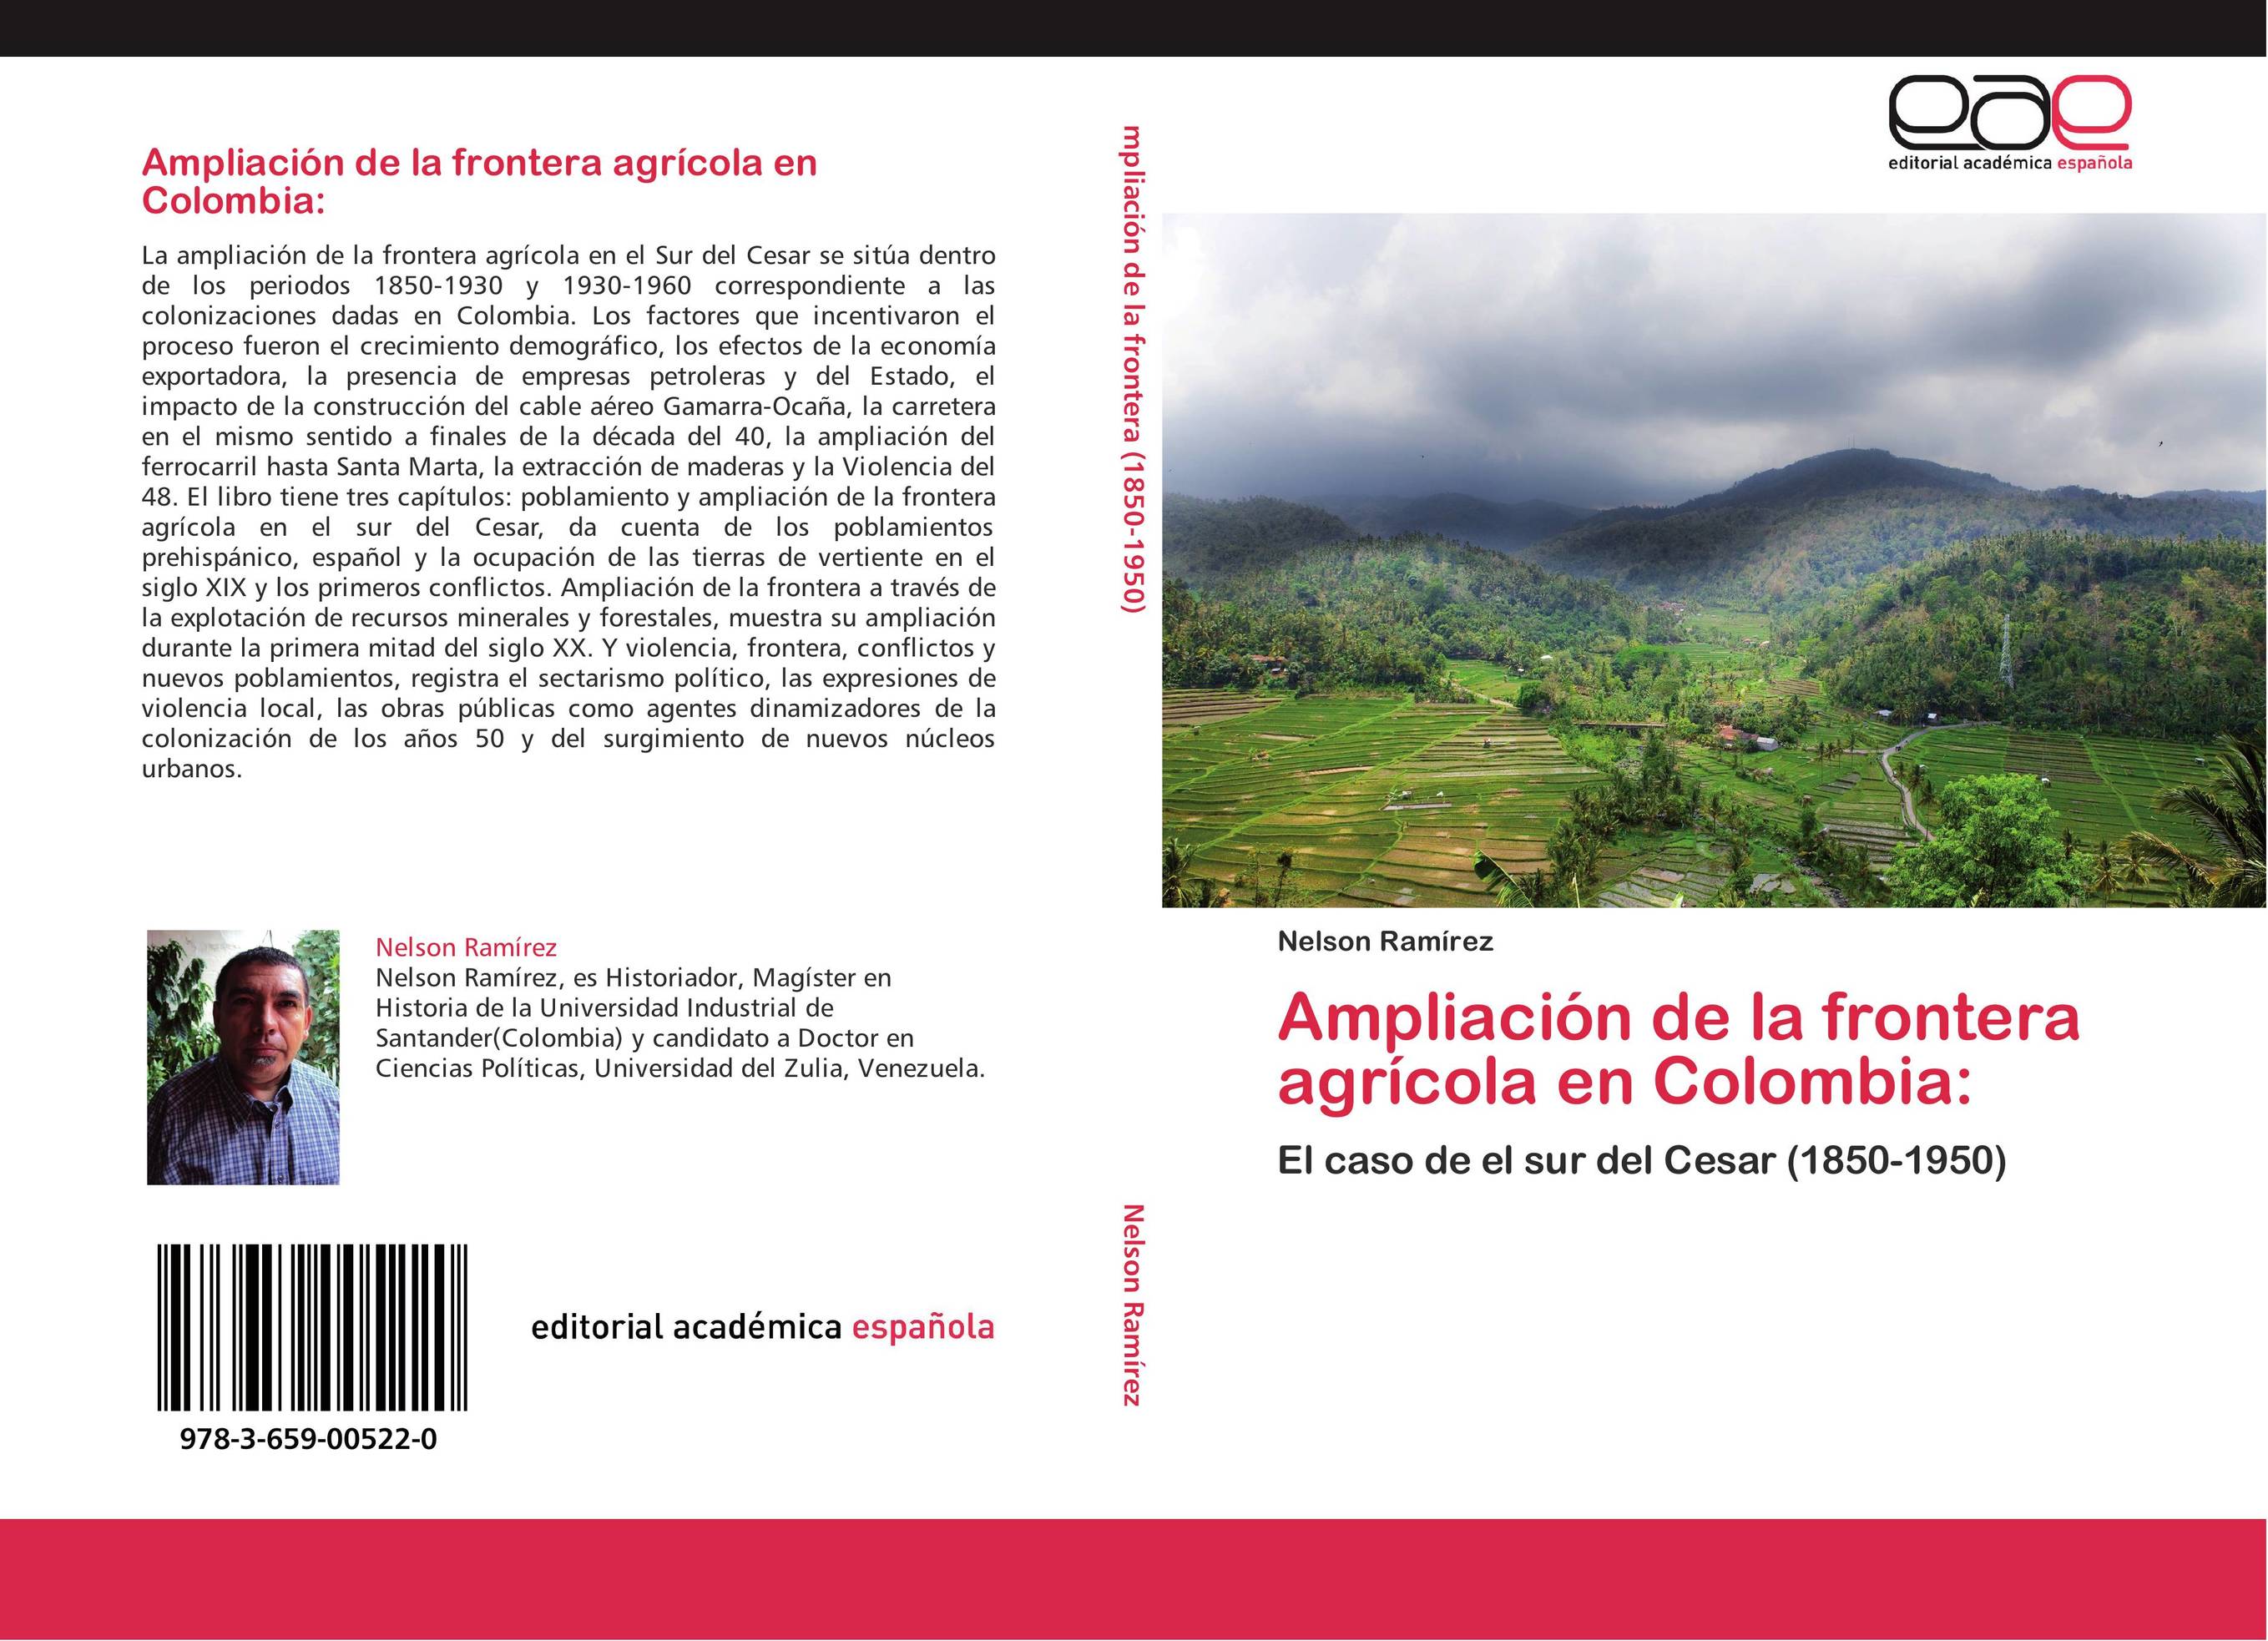 Ampliación de la frontera agrícola en Colombia: